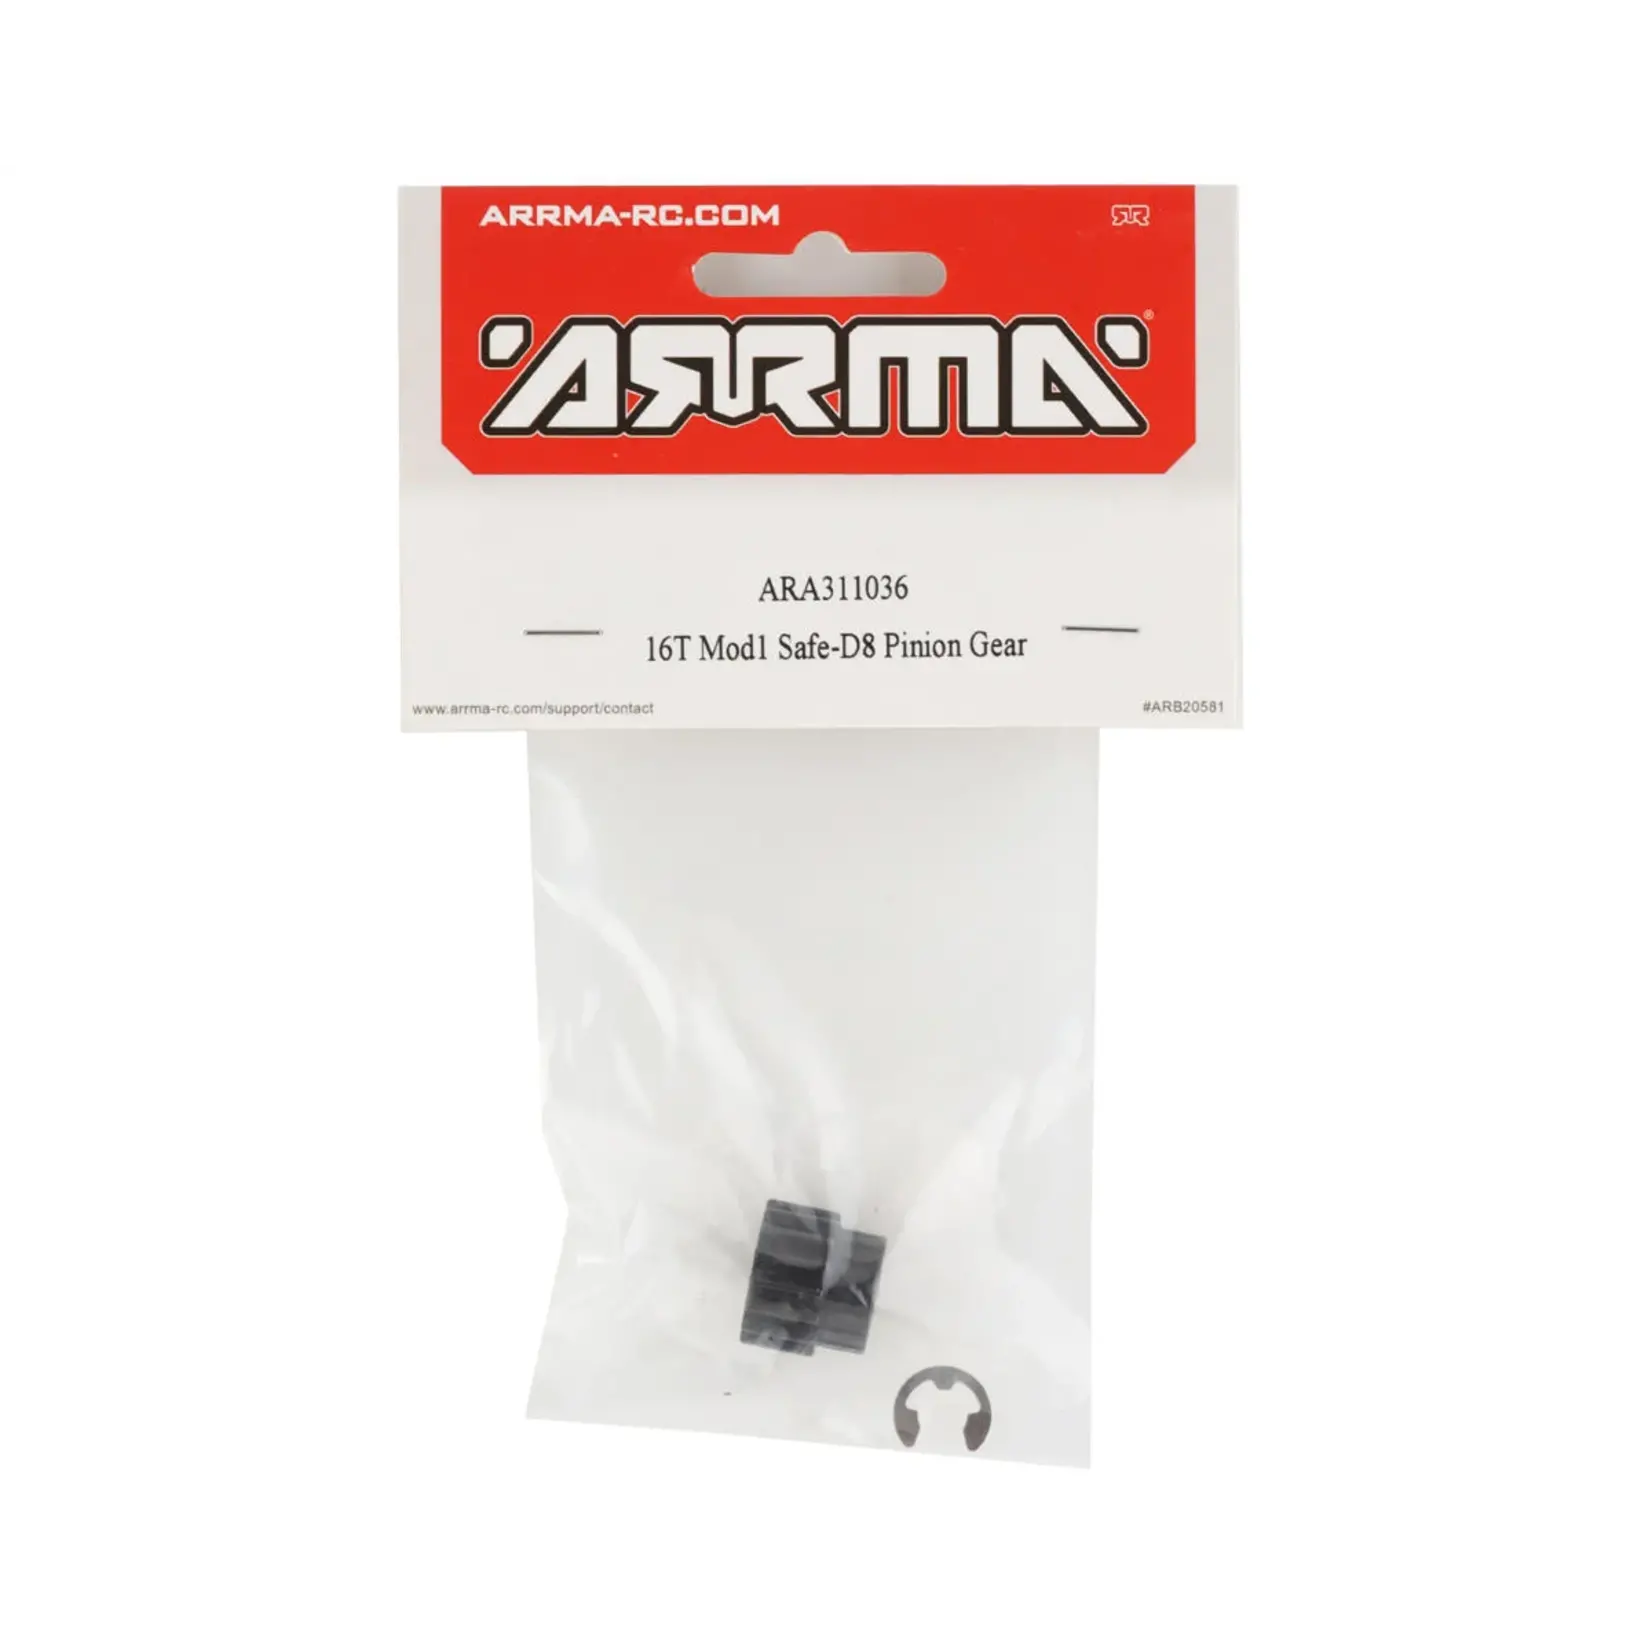 ARRMA Arrma 16T Mod1 Safe-D8 Pinion Gear #ARA311036